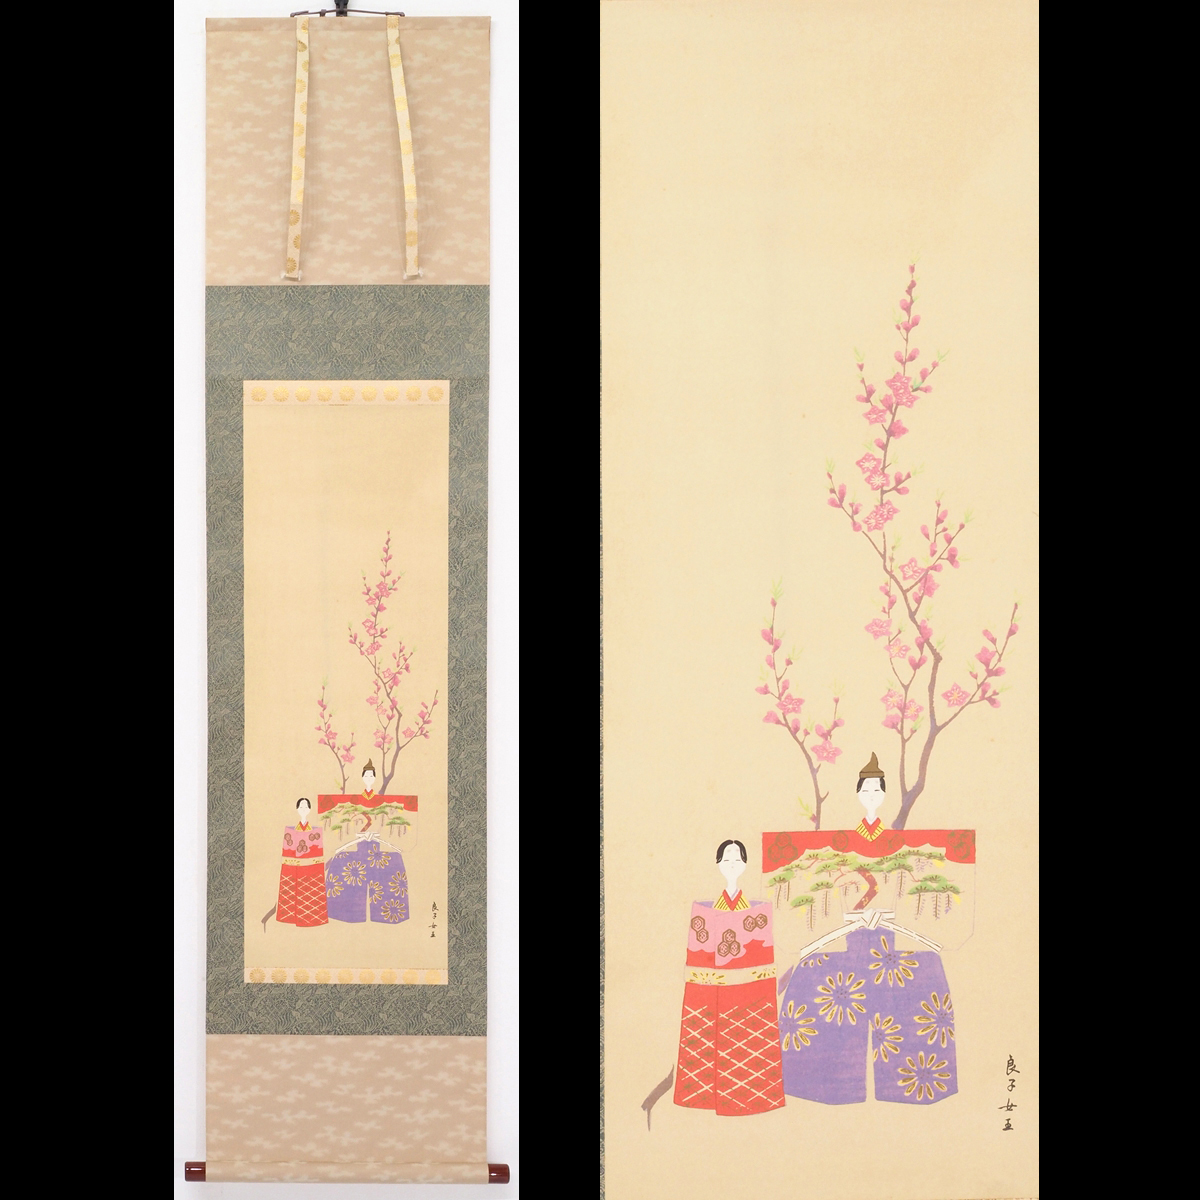 [प्रजनन] [वातारिकन] [महारानी कोजुन] 8528 सूची मूल्य 250, 000 येन लटकता हुआ स्क्रॉल जापानी पेंटिंग हिना डॉल्स का चित्रण डबल बॉक्स मोटा स्क्रॉल पेपर बुक राजकुमार कुनिनोमिया कुनिहिको की पहली बेटी त्यौहार पर हस्ताक्षर, चित्रकारी, जापानी चित्रकला, व्यक्ति, बोधिसत्त्व